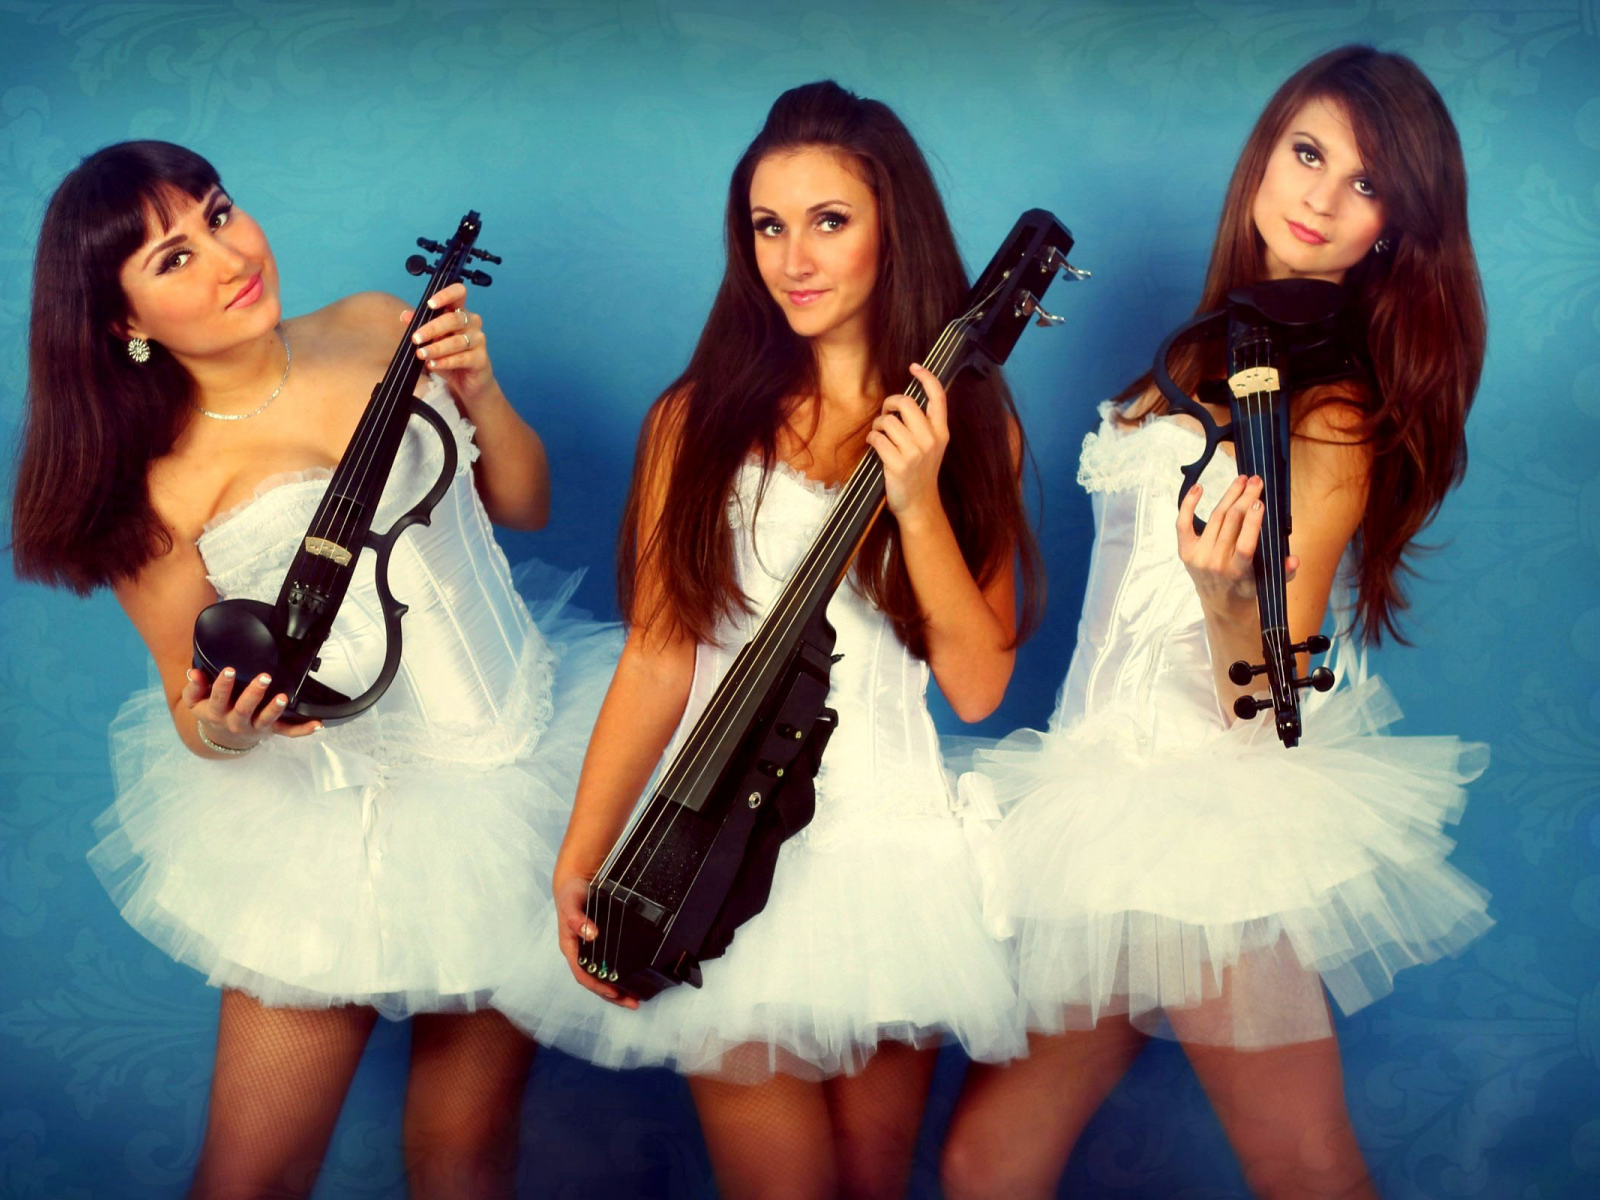 violin group dolls, девушки, скрипачка, скрипачки, виолончель виолончелистка, трио, доллс, синий, белый, голубой, узор, электроскрипка, электроскрипачки, электровиолончель, шоу, красивые девушки, куколки, струнное трио, музыканты